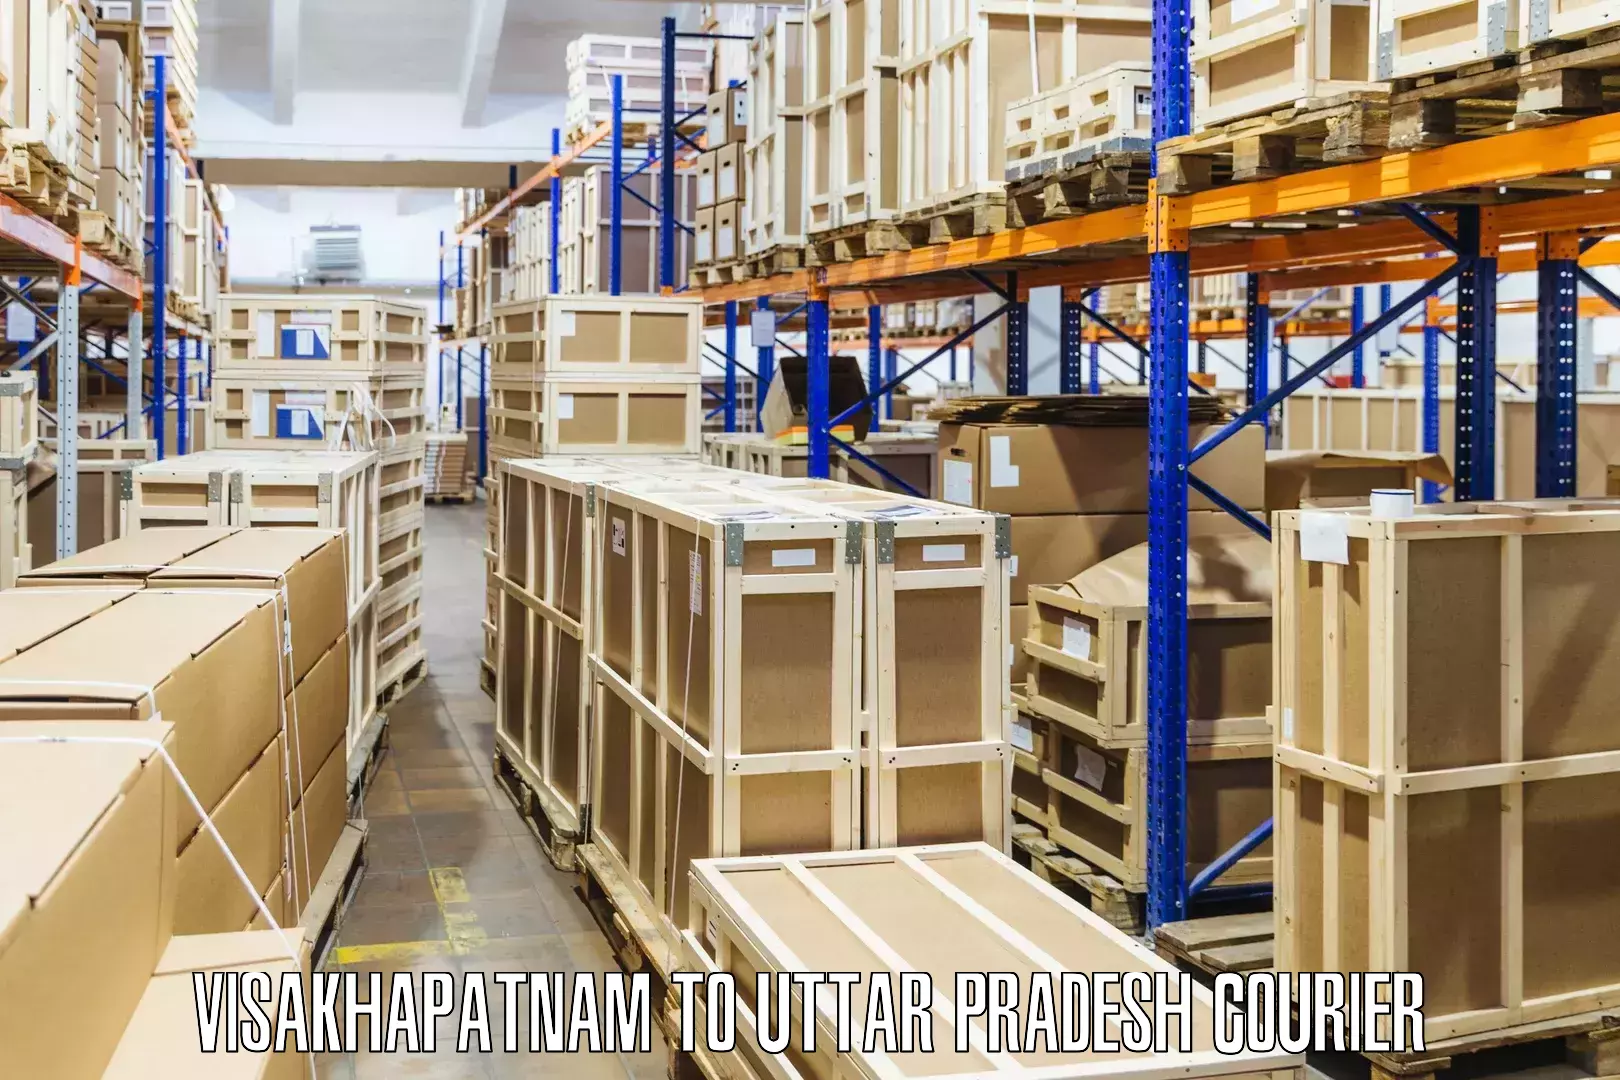 High-capacity shipping options in Visakhapatnam to Khalilabad